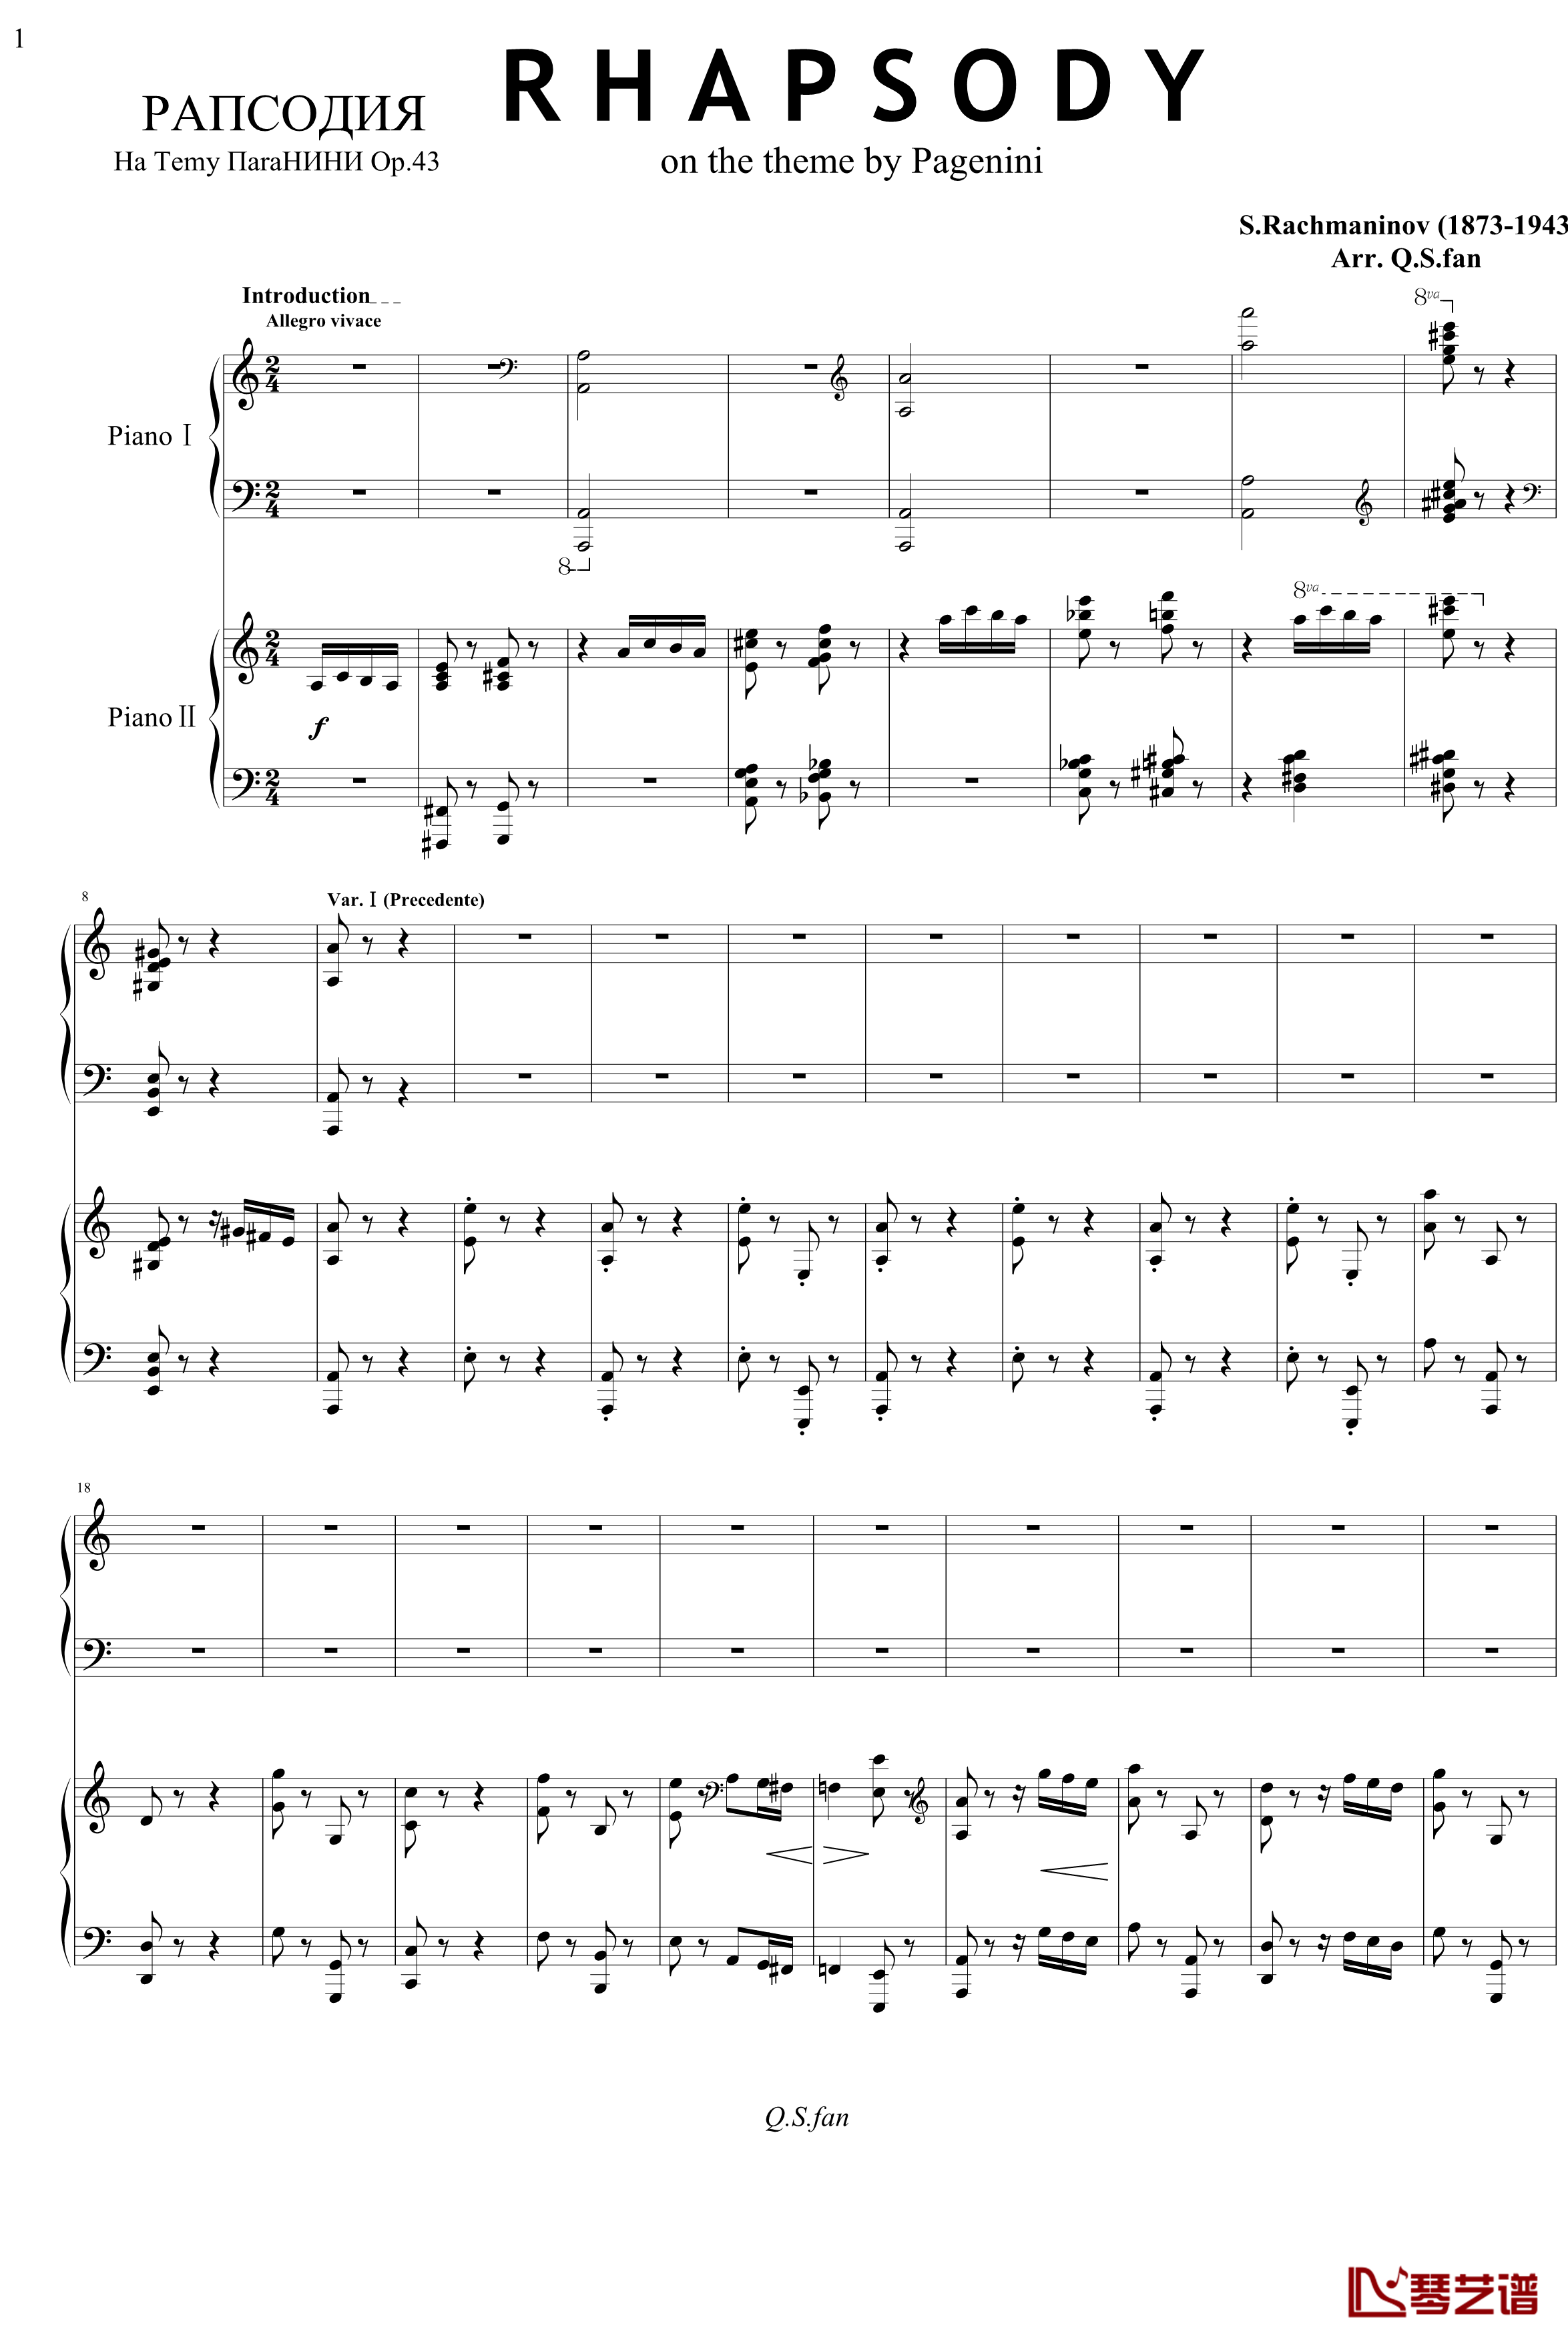 帕格尼主题狂想曲钢琴谱-1~10变奏-拉赫马尼若夫1